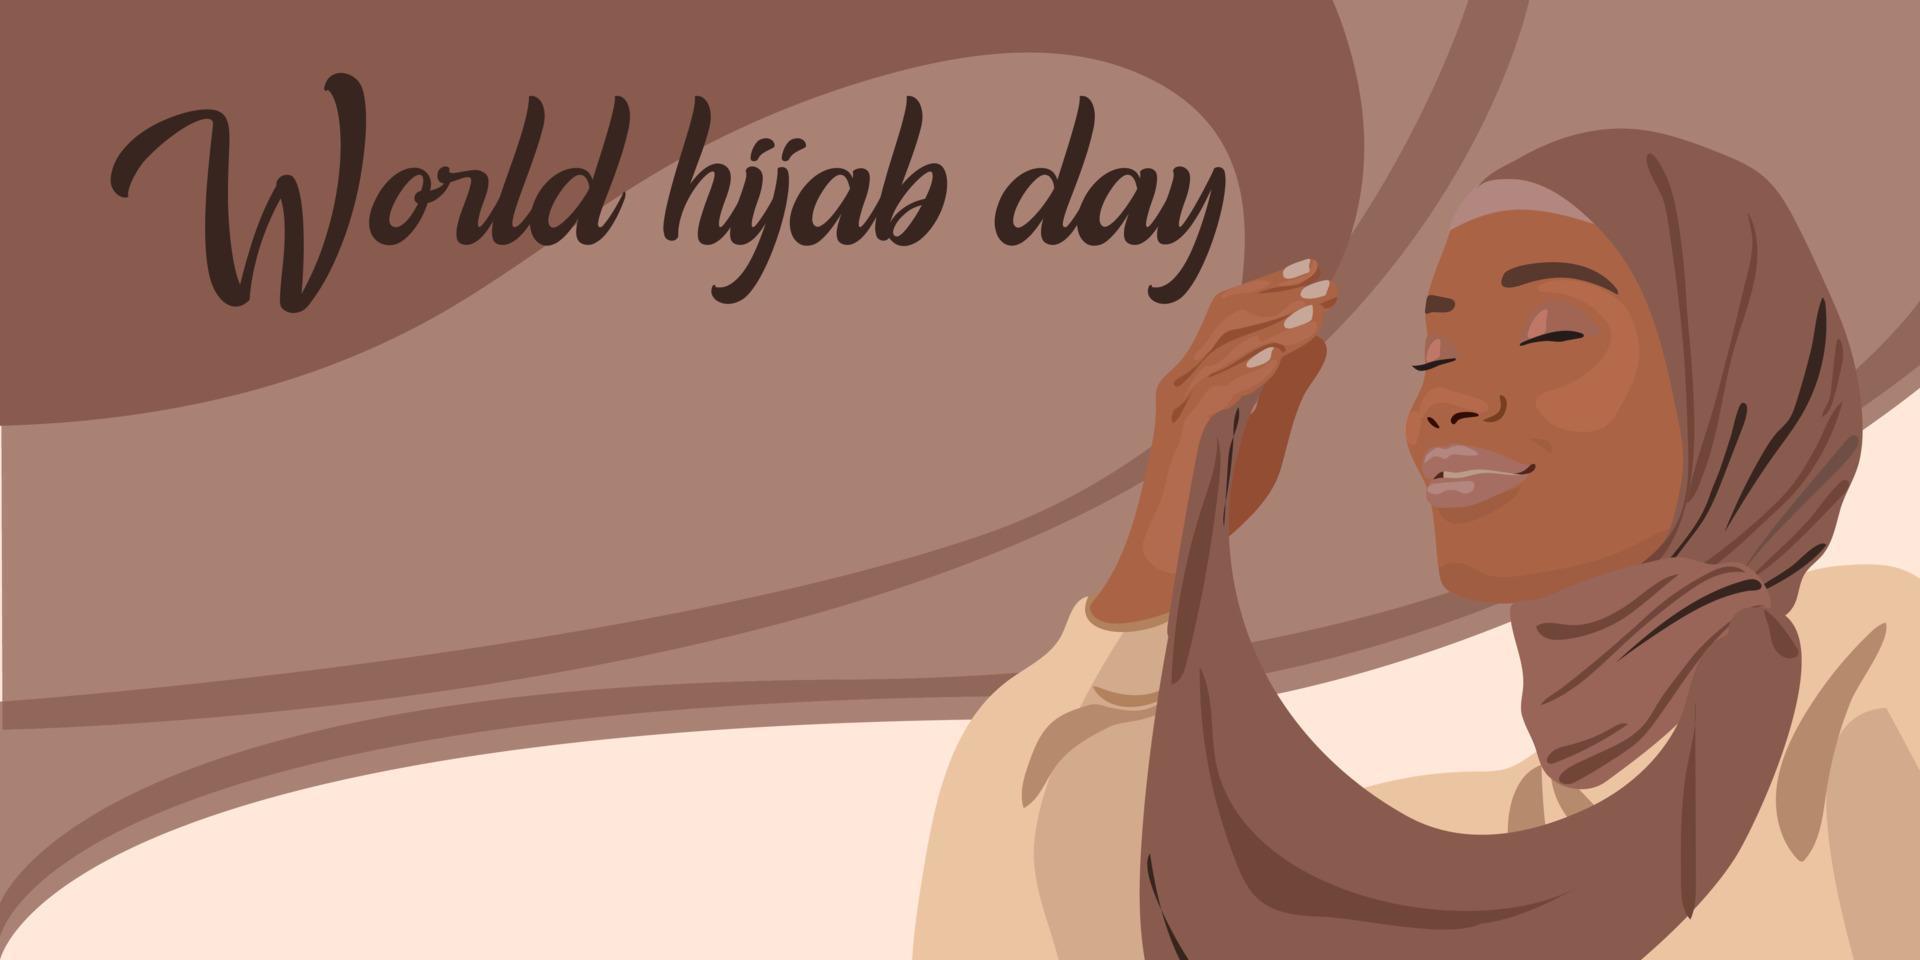 journée mondiale du hijab. une femme musulmane dans un hijab. femme arabe. 1 février. bonne journée mondiale de la femme en hijab. illustration vectorielle d'une fille dans un foulard. La bannière vecteur